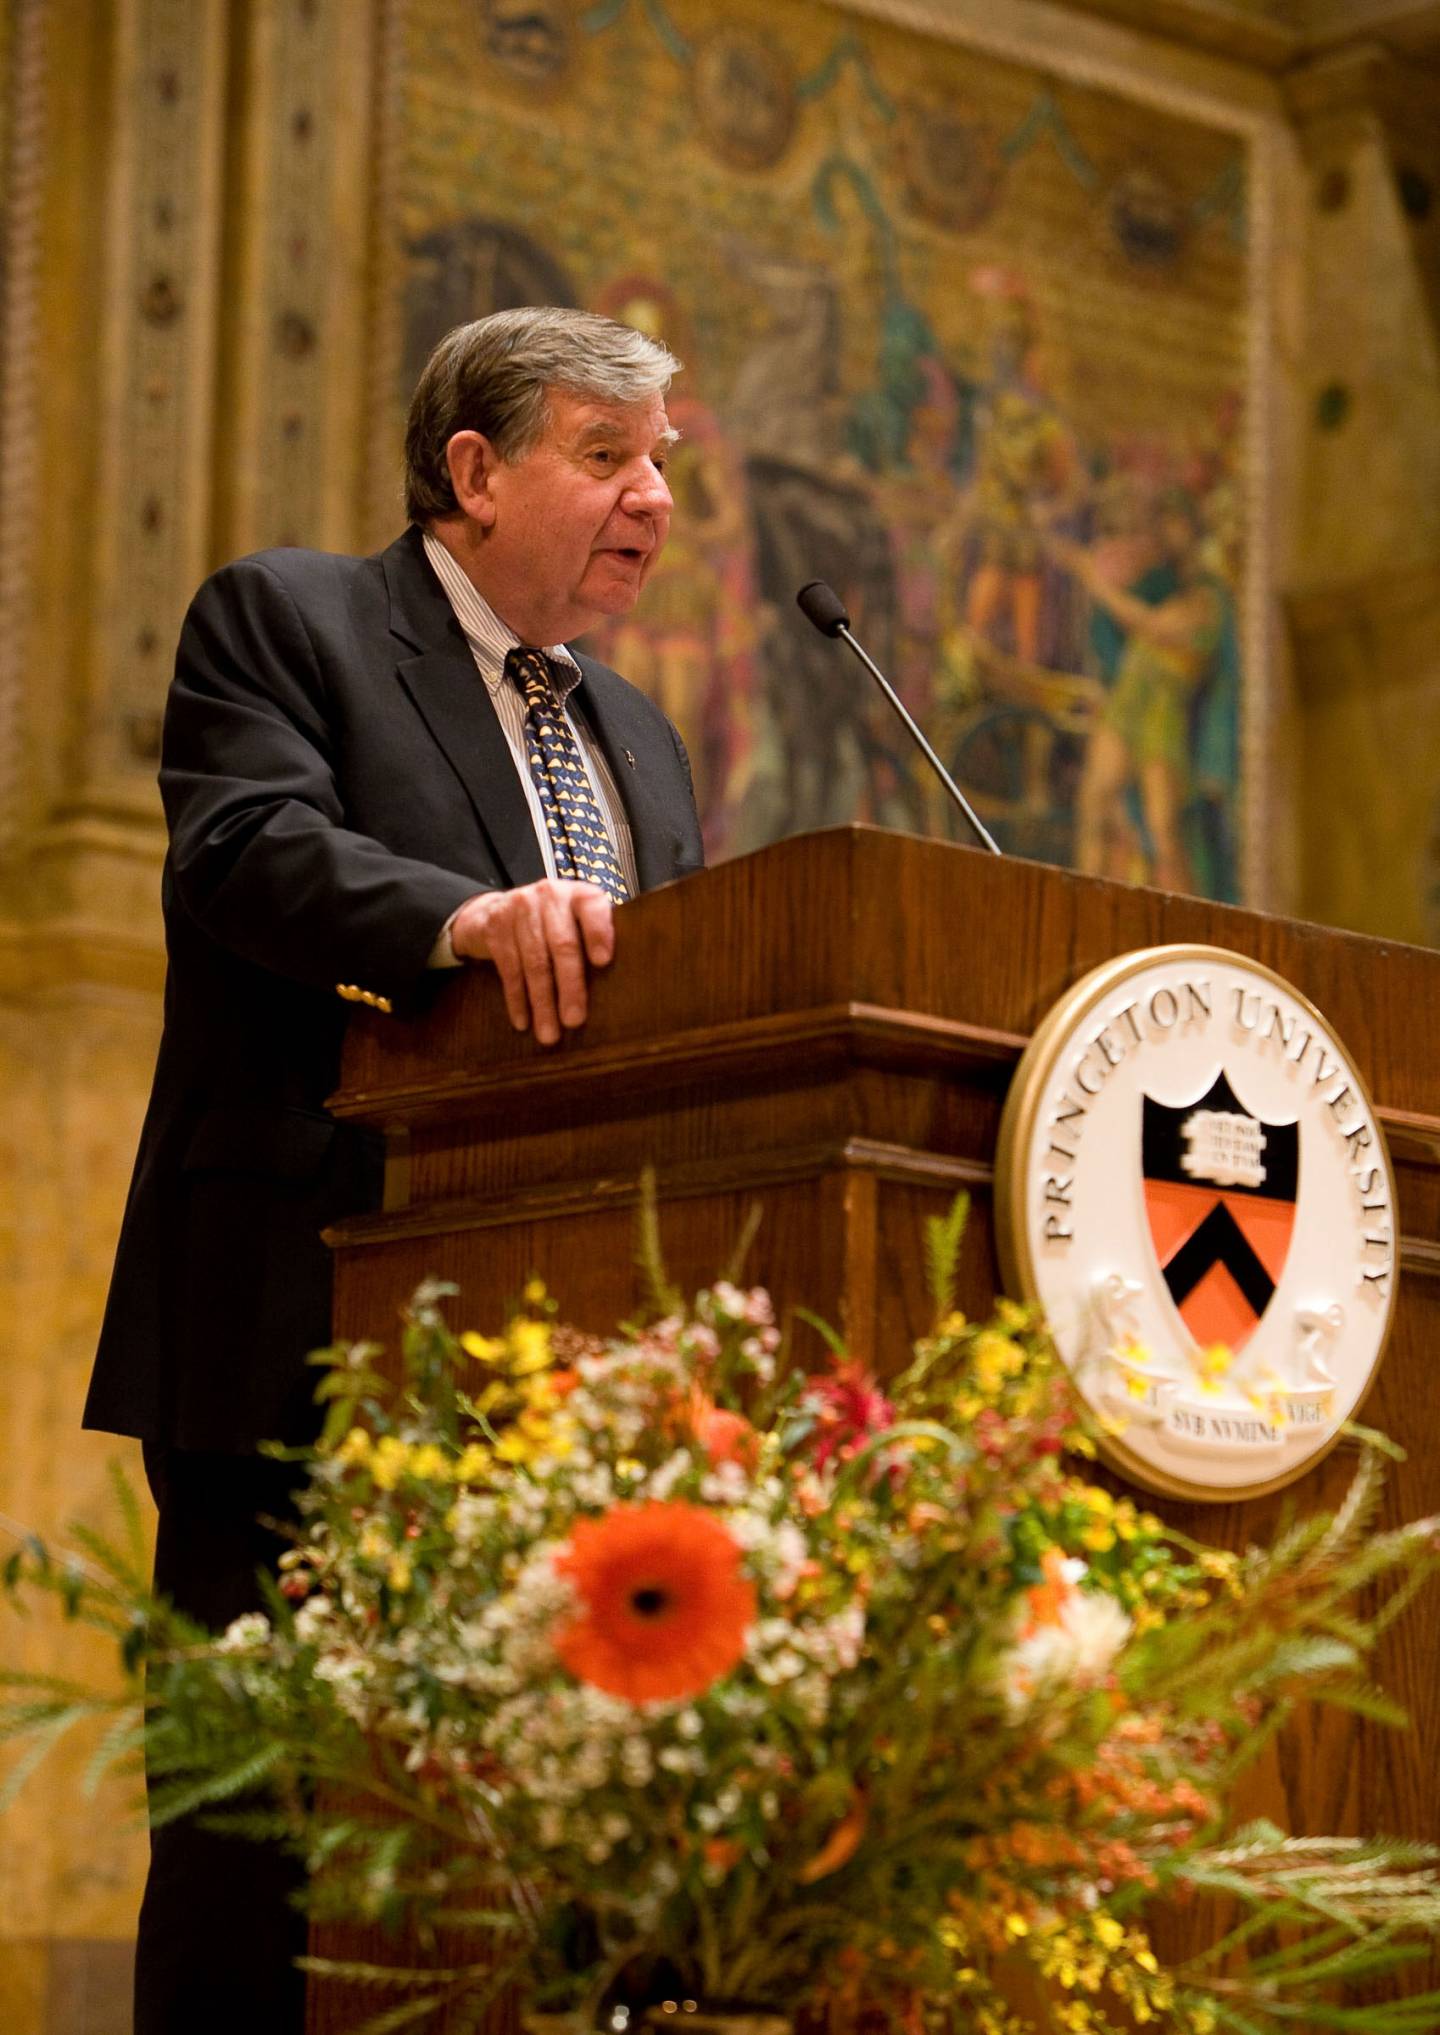 William G. Bowen speaks at a podium